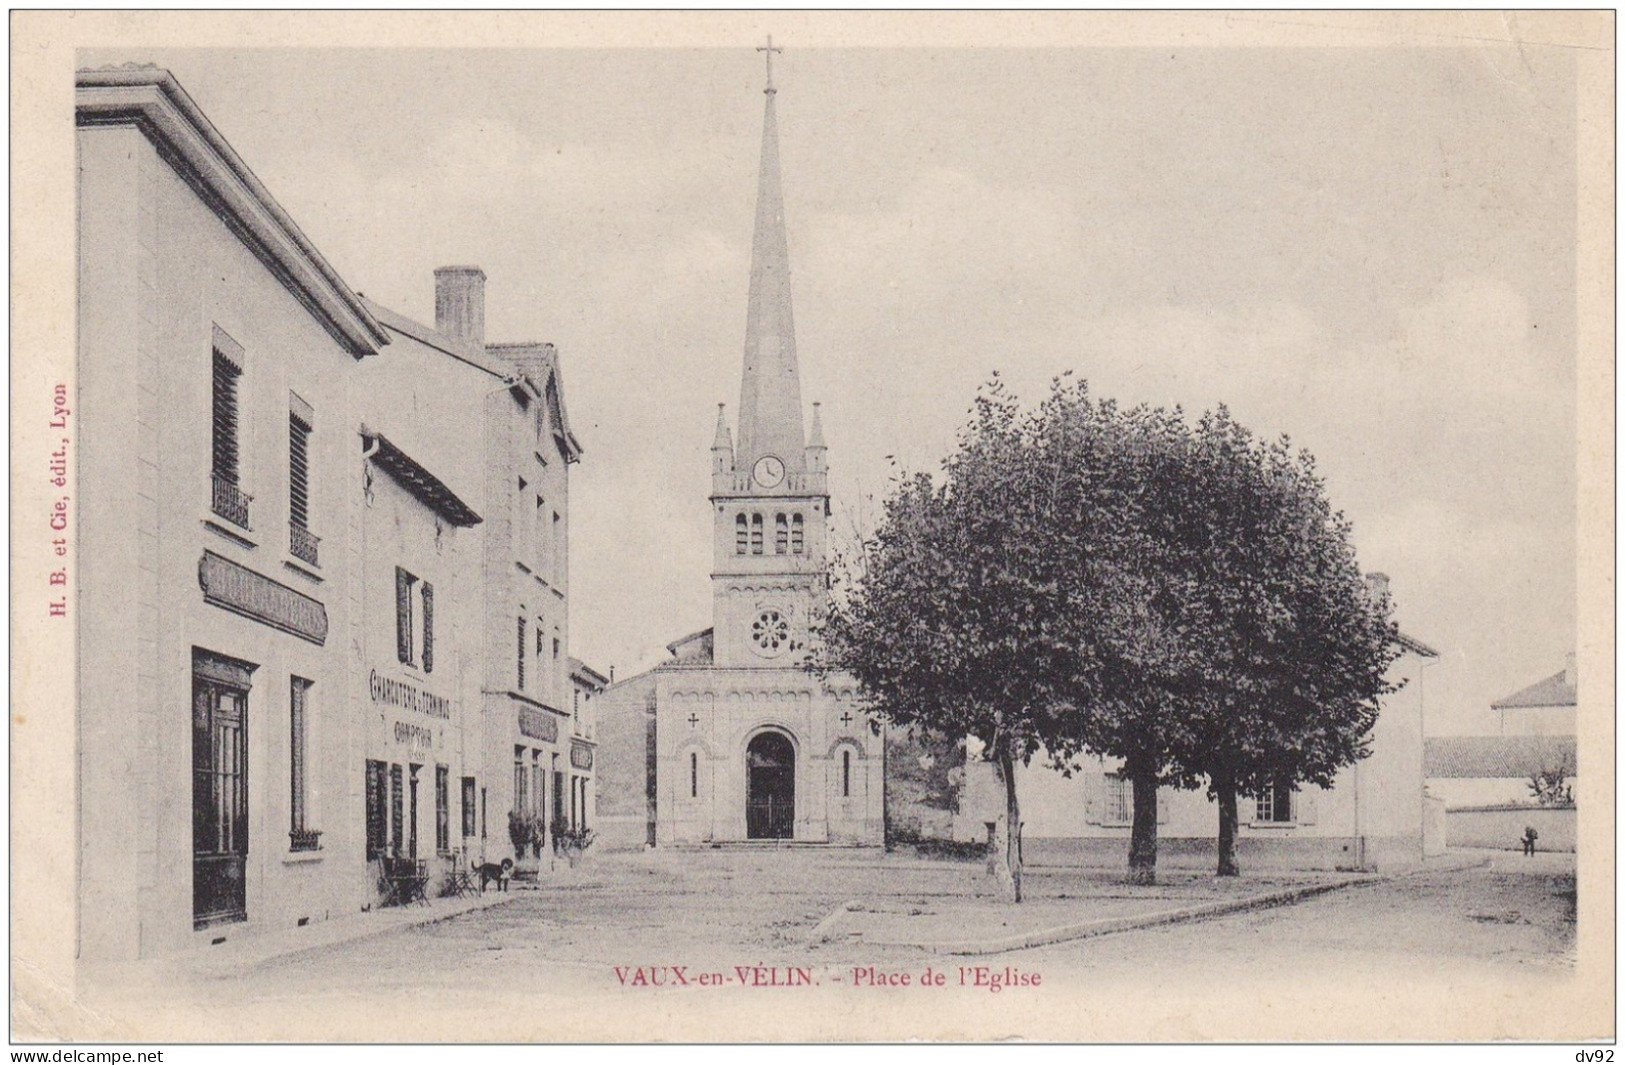 RHONE VAUX EN VELIN PLACE DE L EGLISE - Vaux-en-Velin